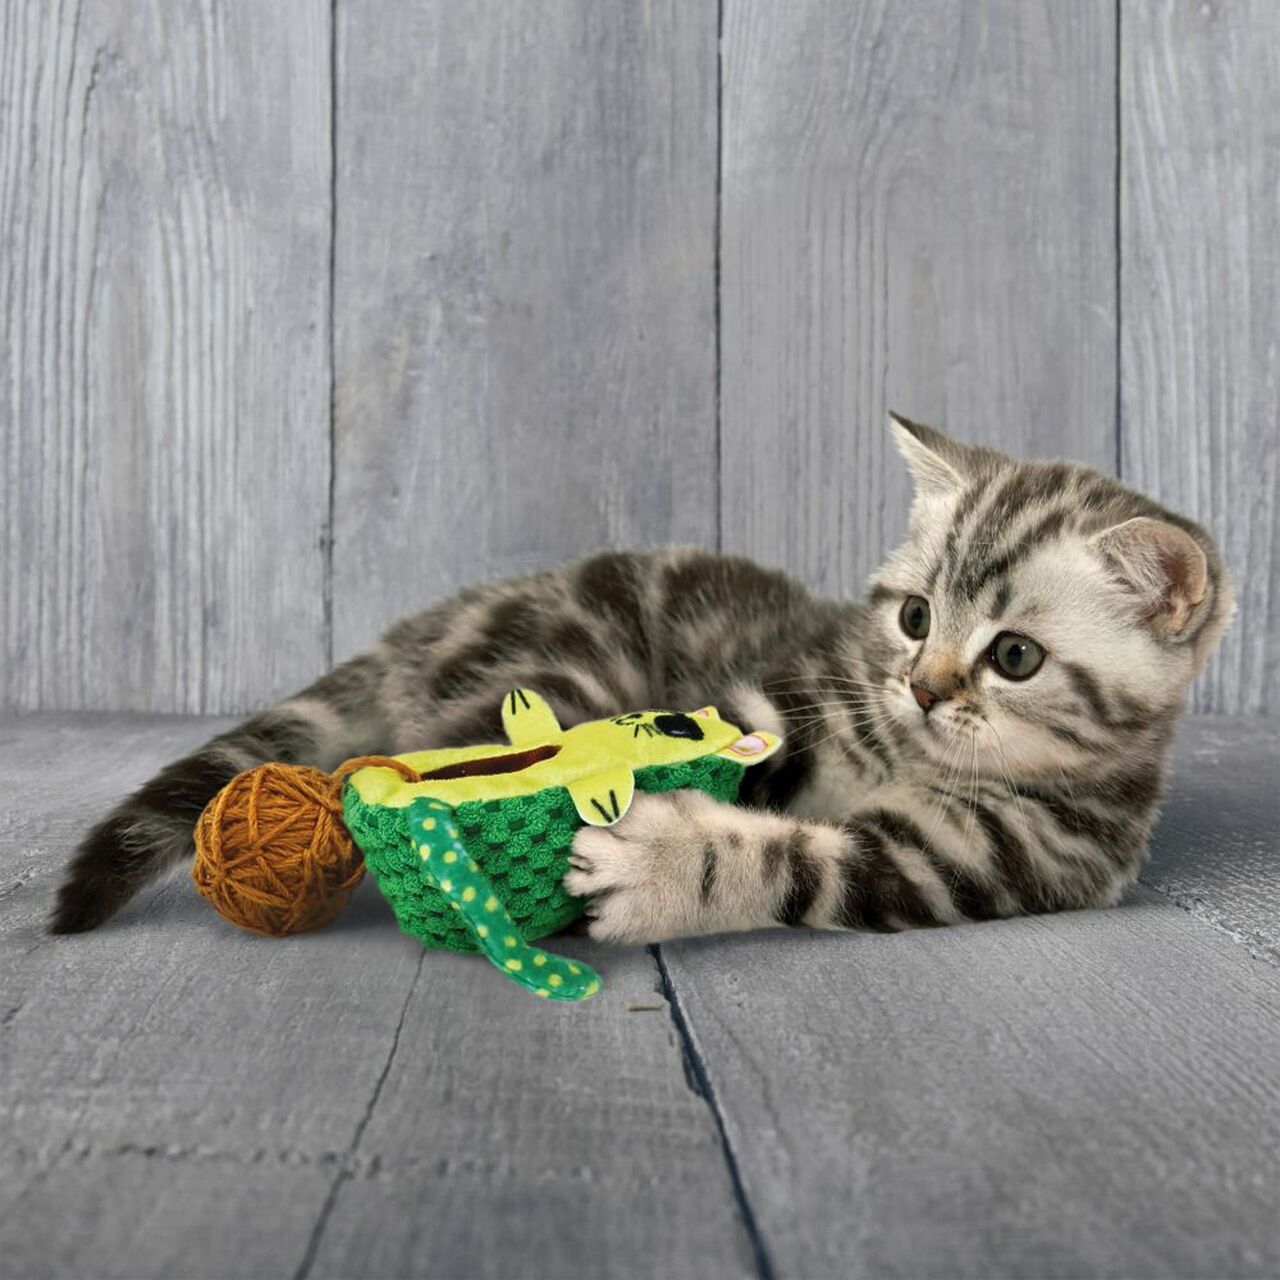 KONG giocattolo per gatti Avocato Wrangler